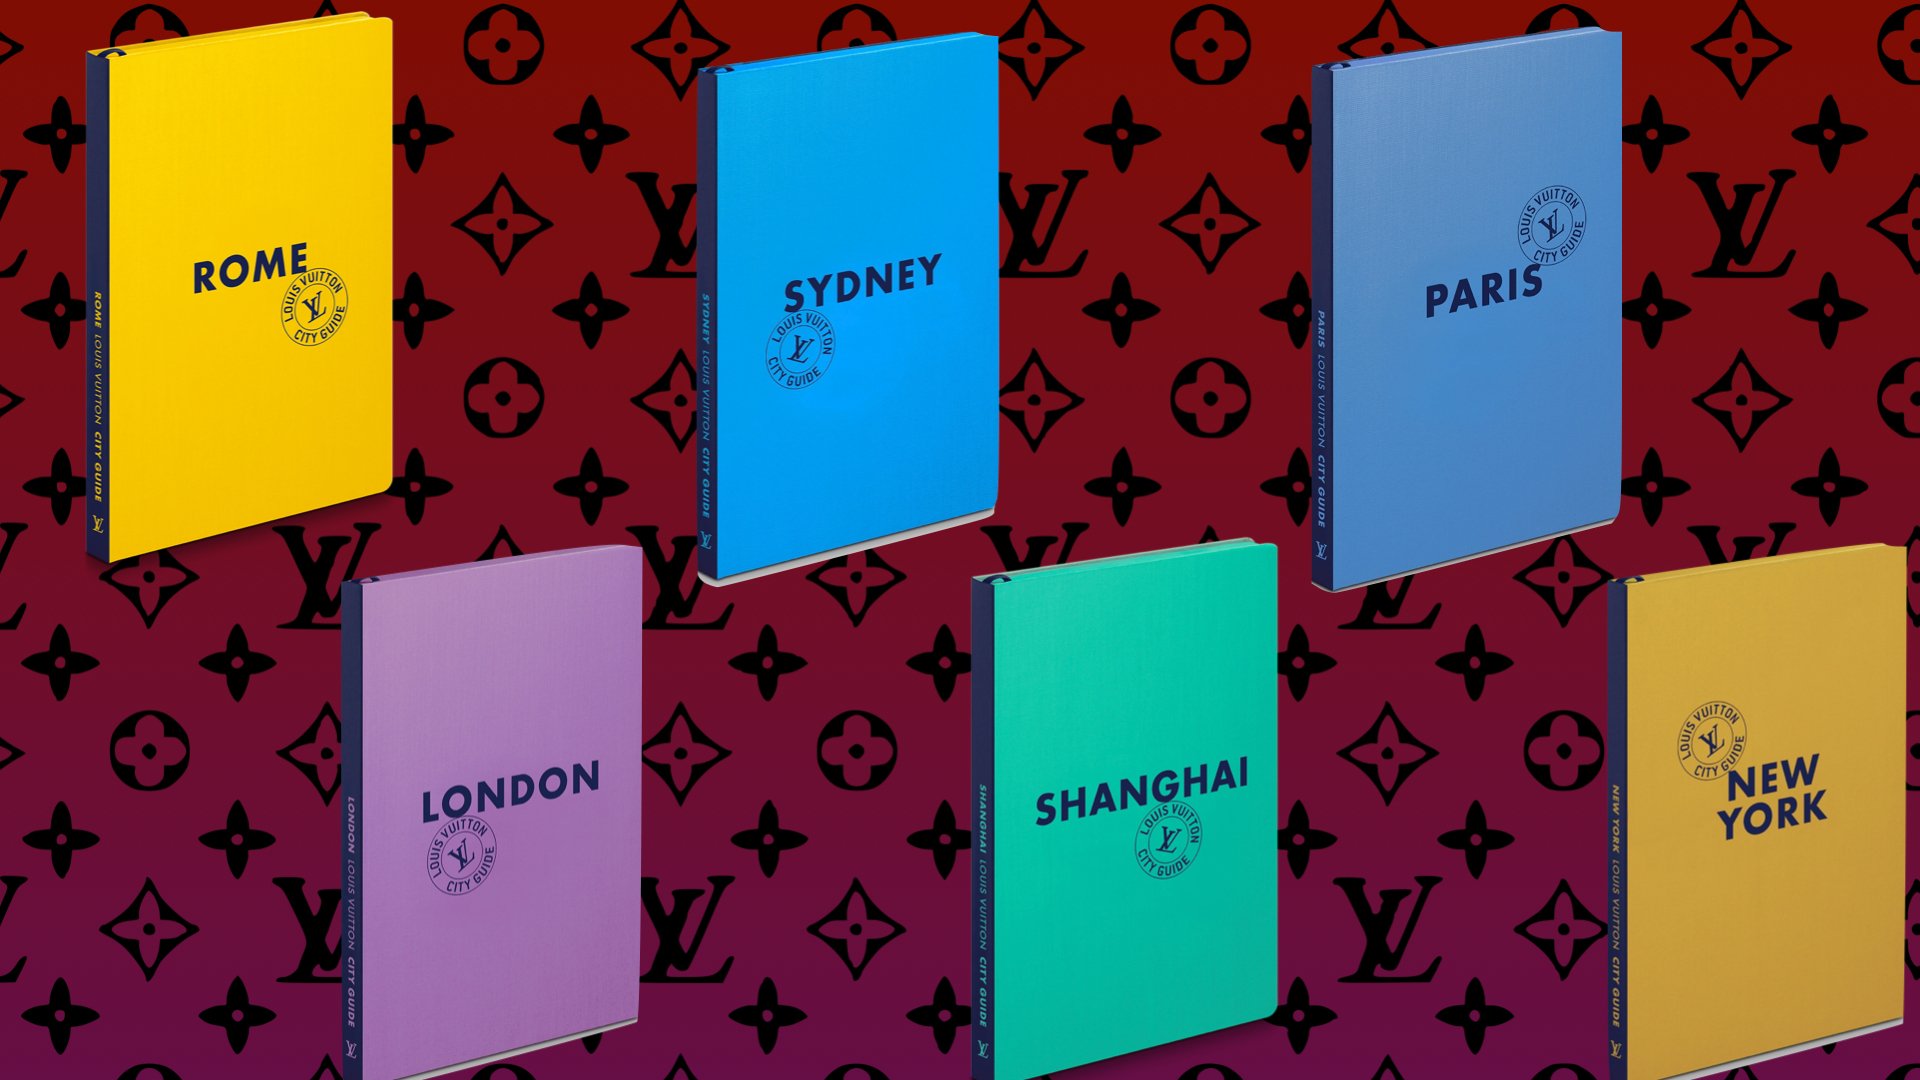 Louis Vuitton's New City Guides